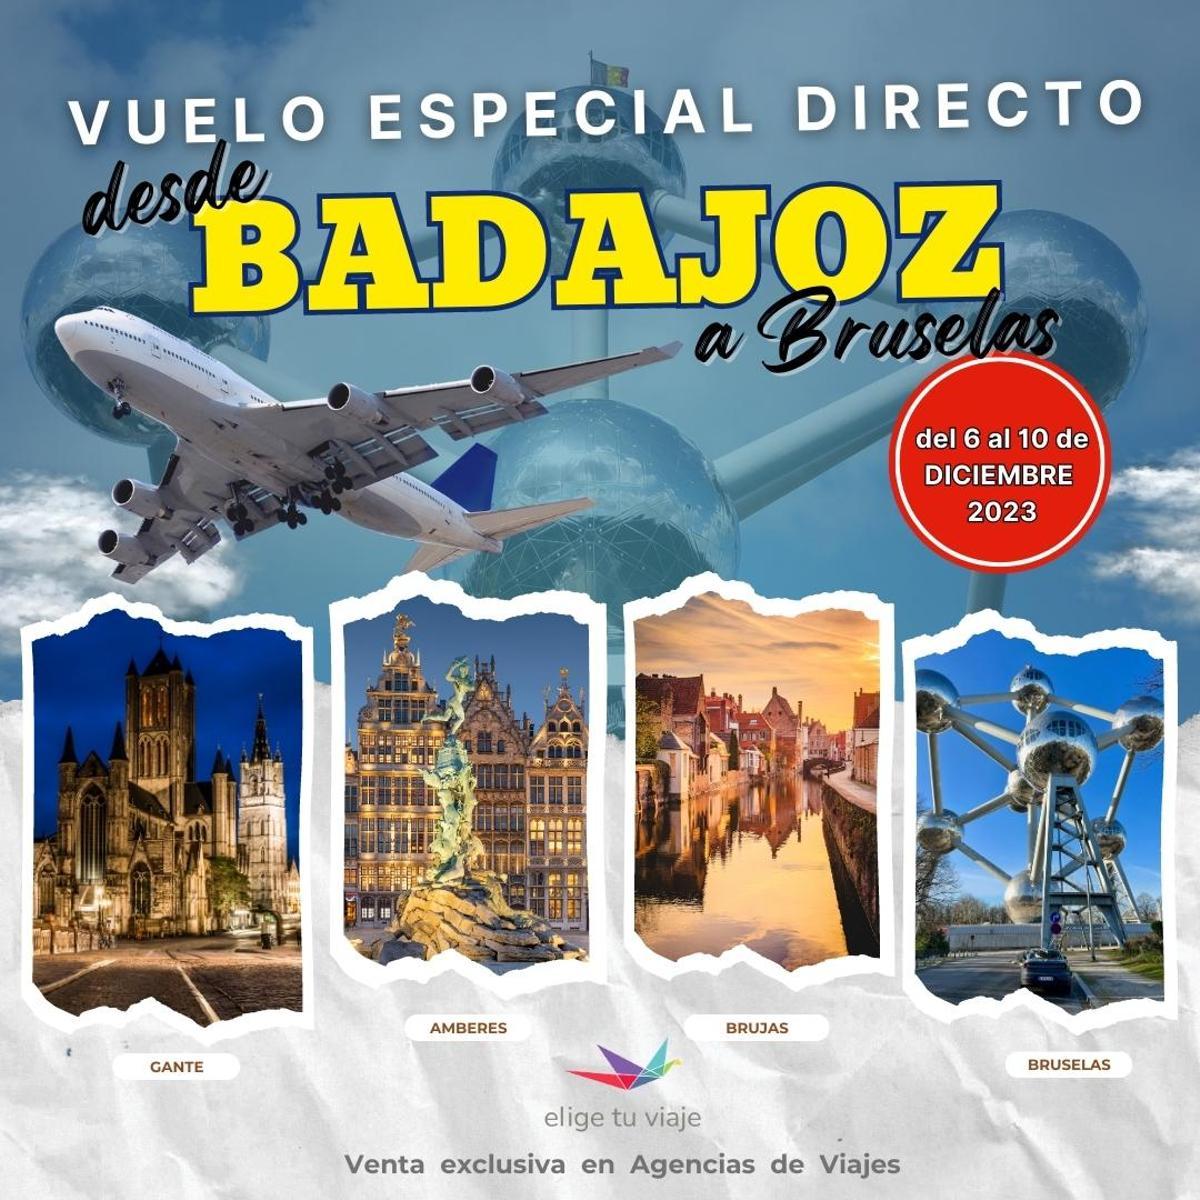 Vuelo especial directo desde Badajoz en el puente de diciembre.